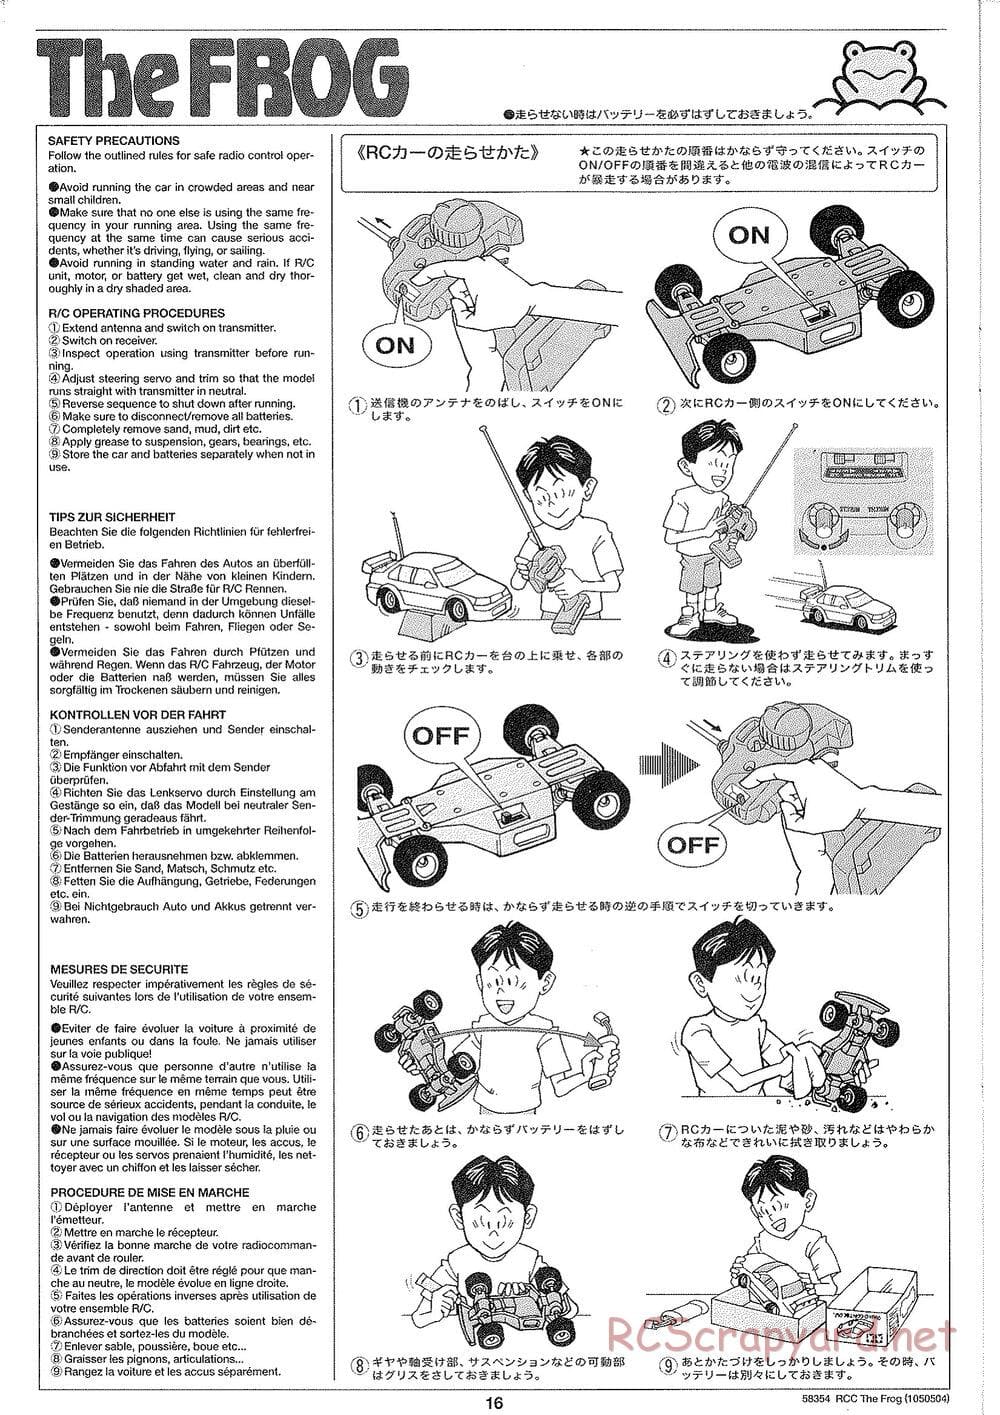 Tamiya - The Frog - 2005 - ORV Chassis - Manual - Page 16